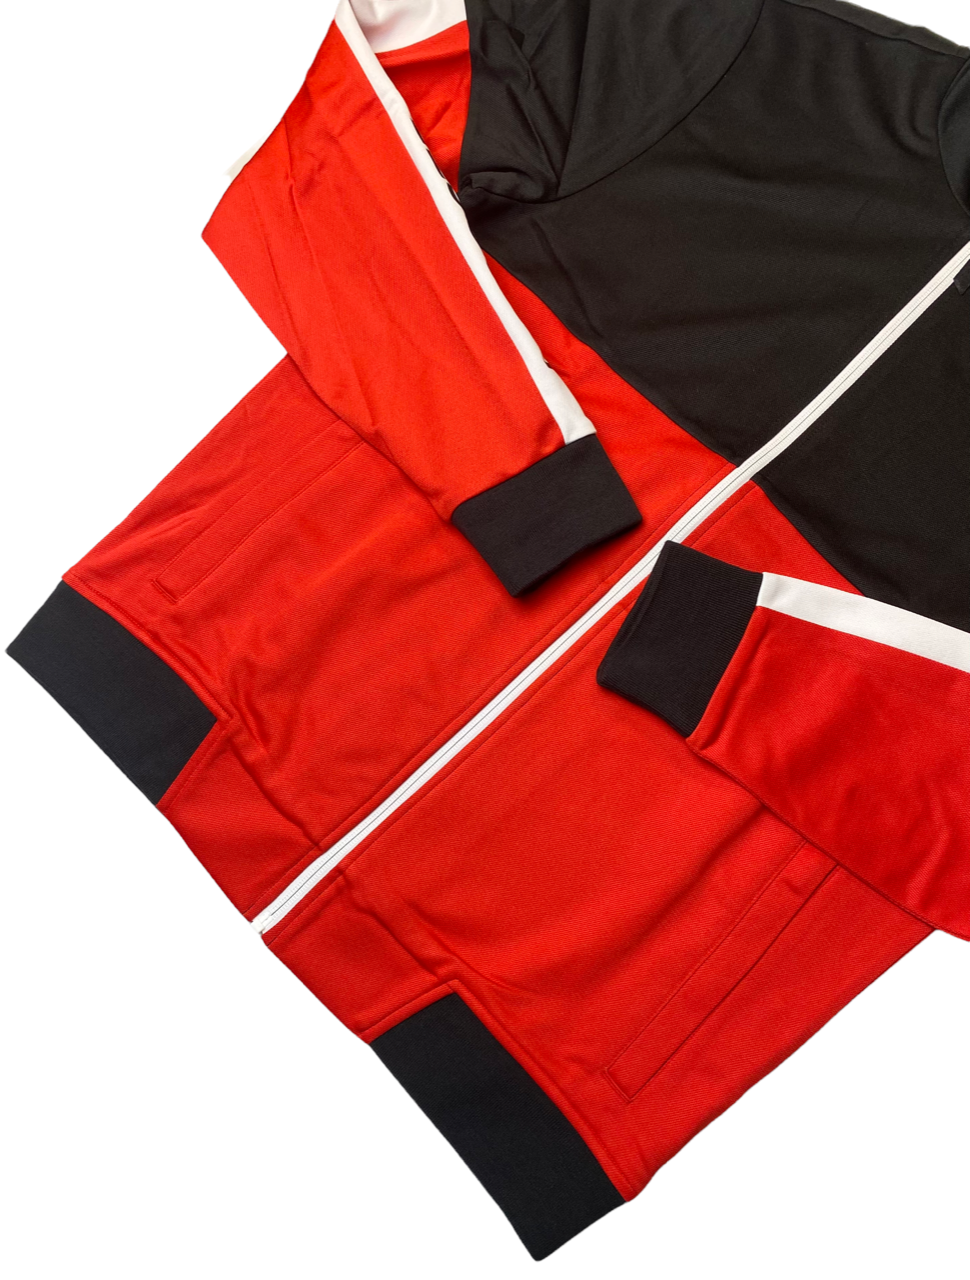 Lacoste Mens Colorblock Pique Zip Sweatshirt - Multiple Sizes - [SH4836-51-G54]